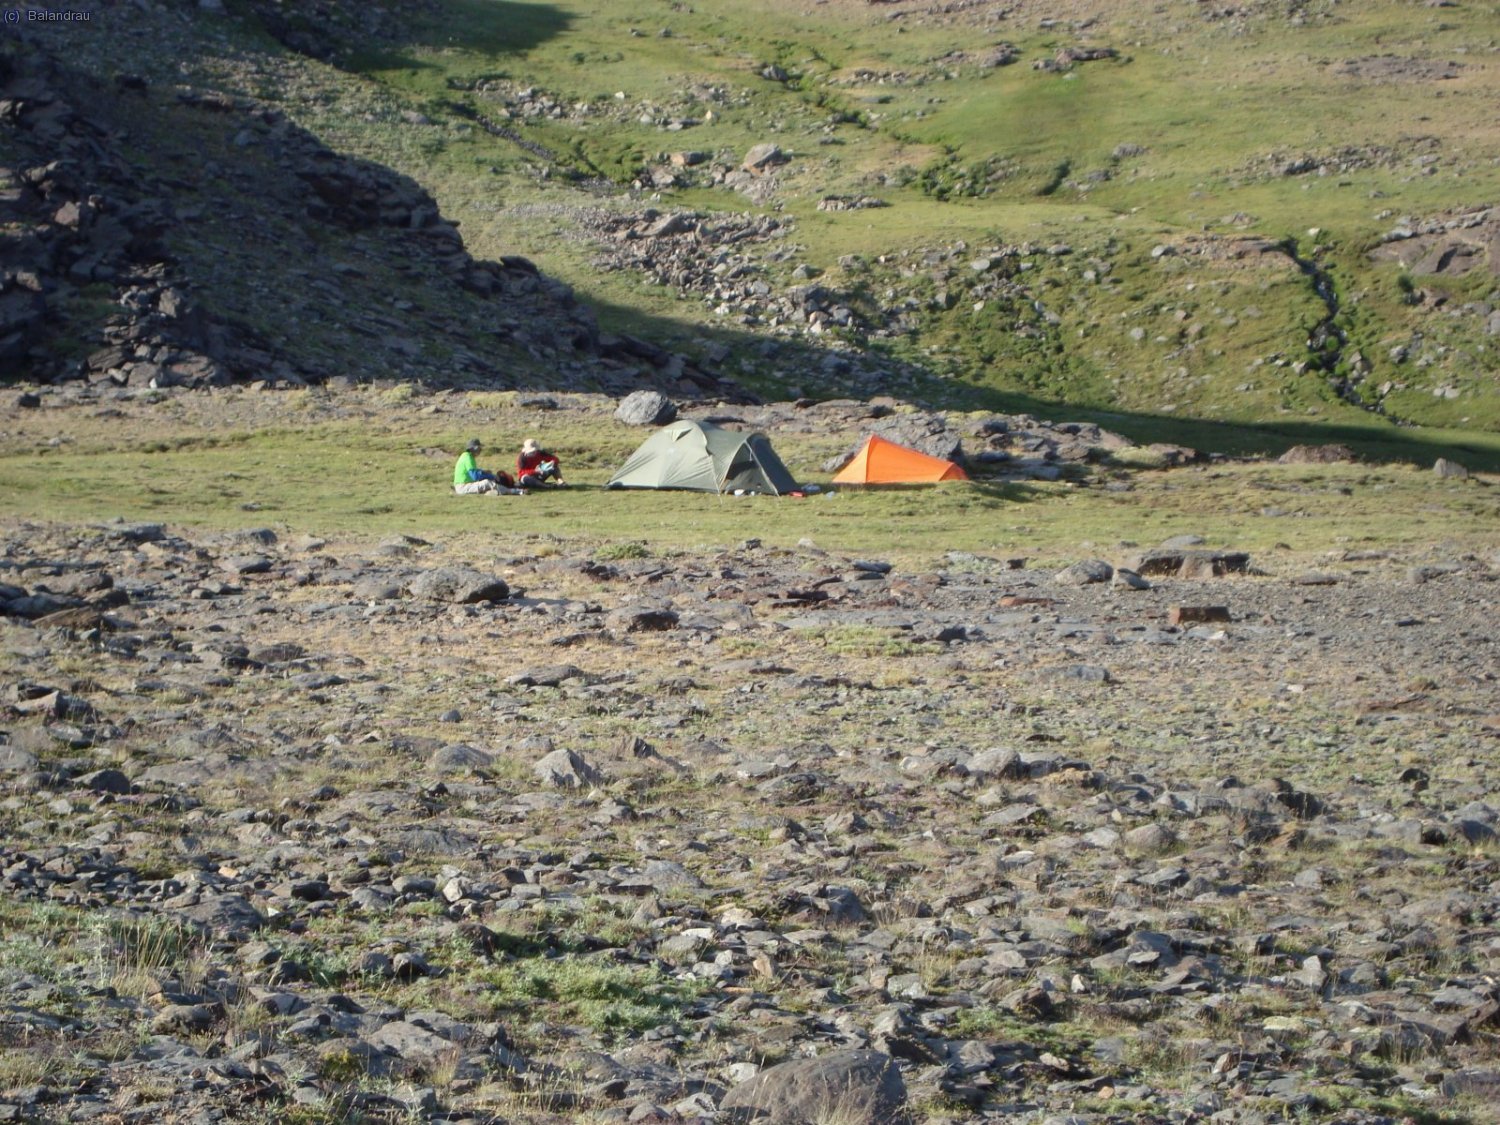 Camping de la segunda noche en la zona de las Lagunas de las Calderetas a 2700 mts.